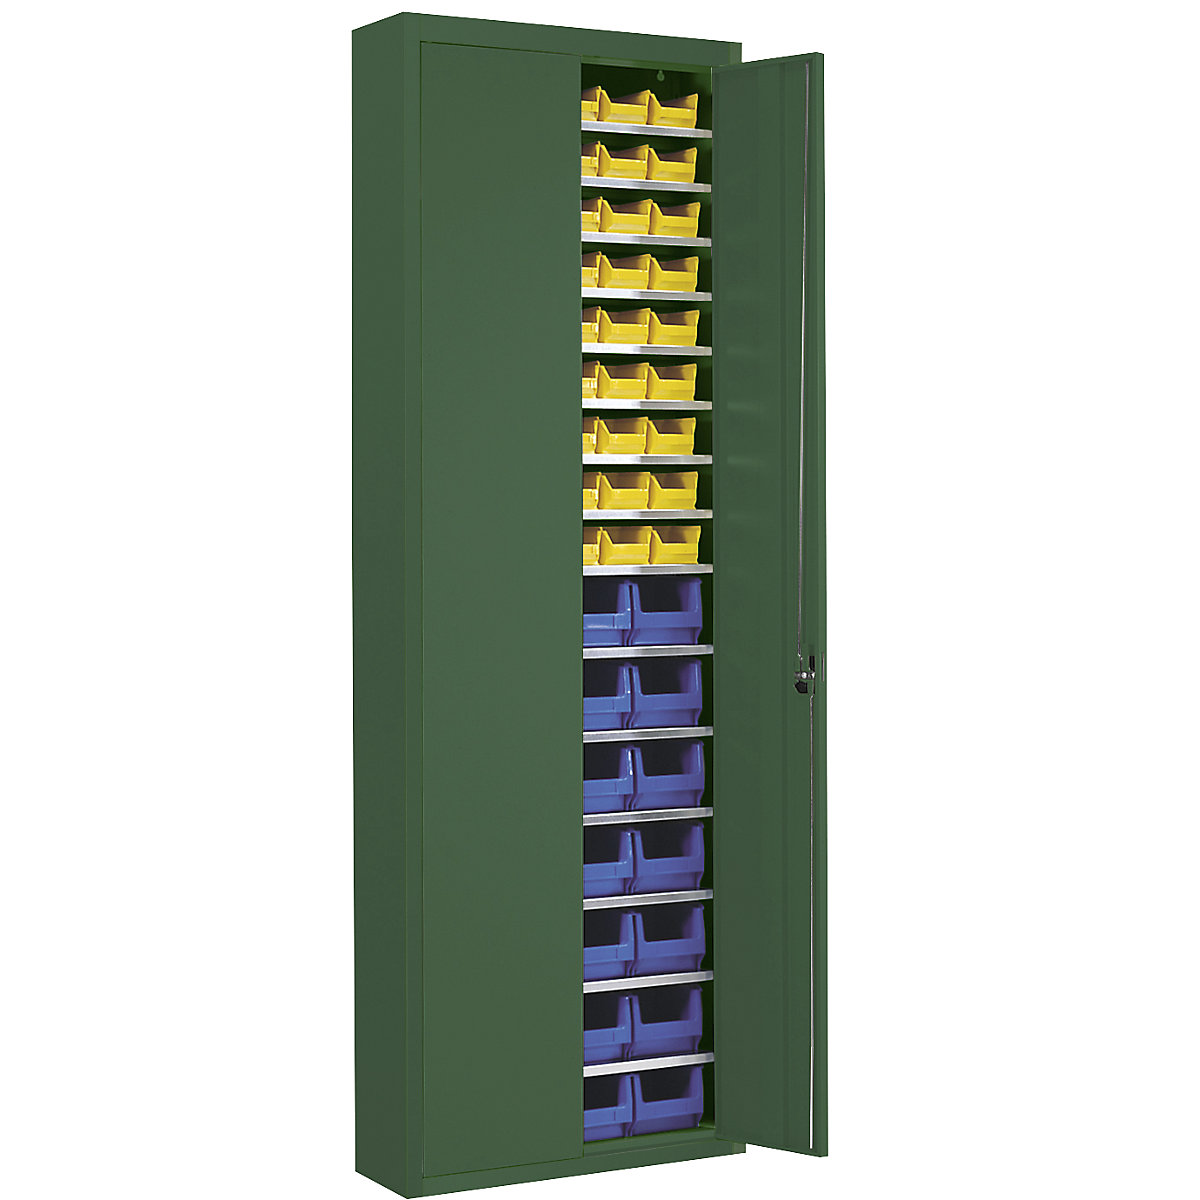 Raktári szekrény nyitott tárolódobozokkal – mauser, ma x szé x mé 2150 x 680 x 280 mm, egyszínű, zöld, 82 doboz-10